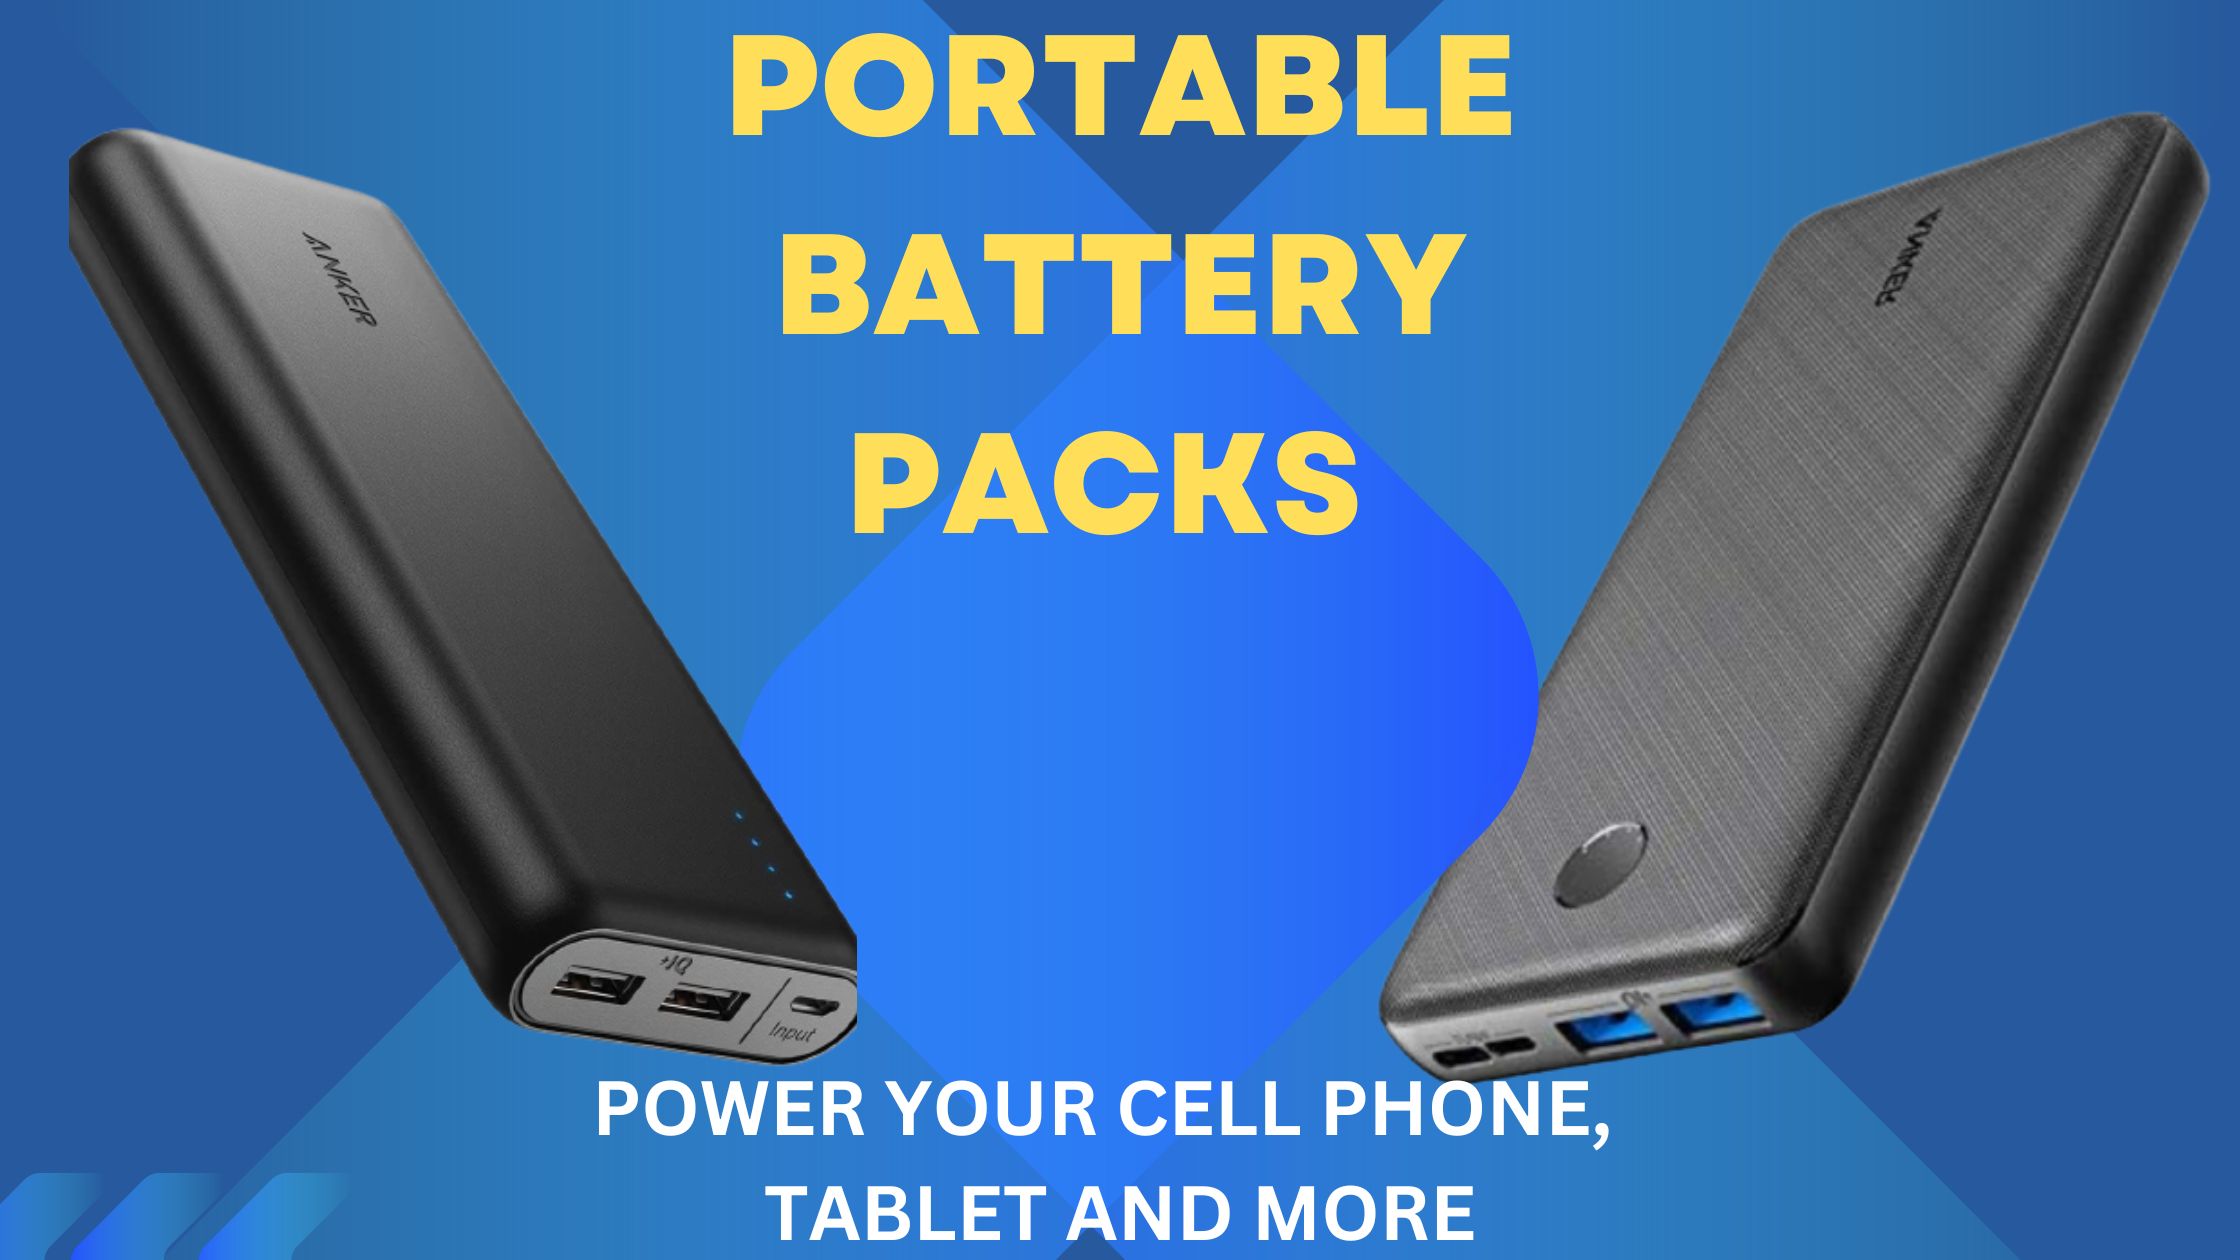 Portable battery packs 